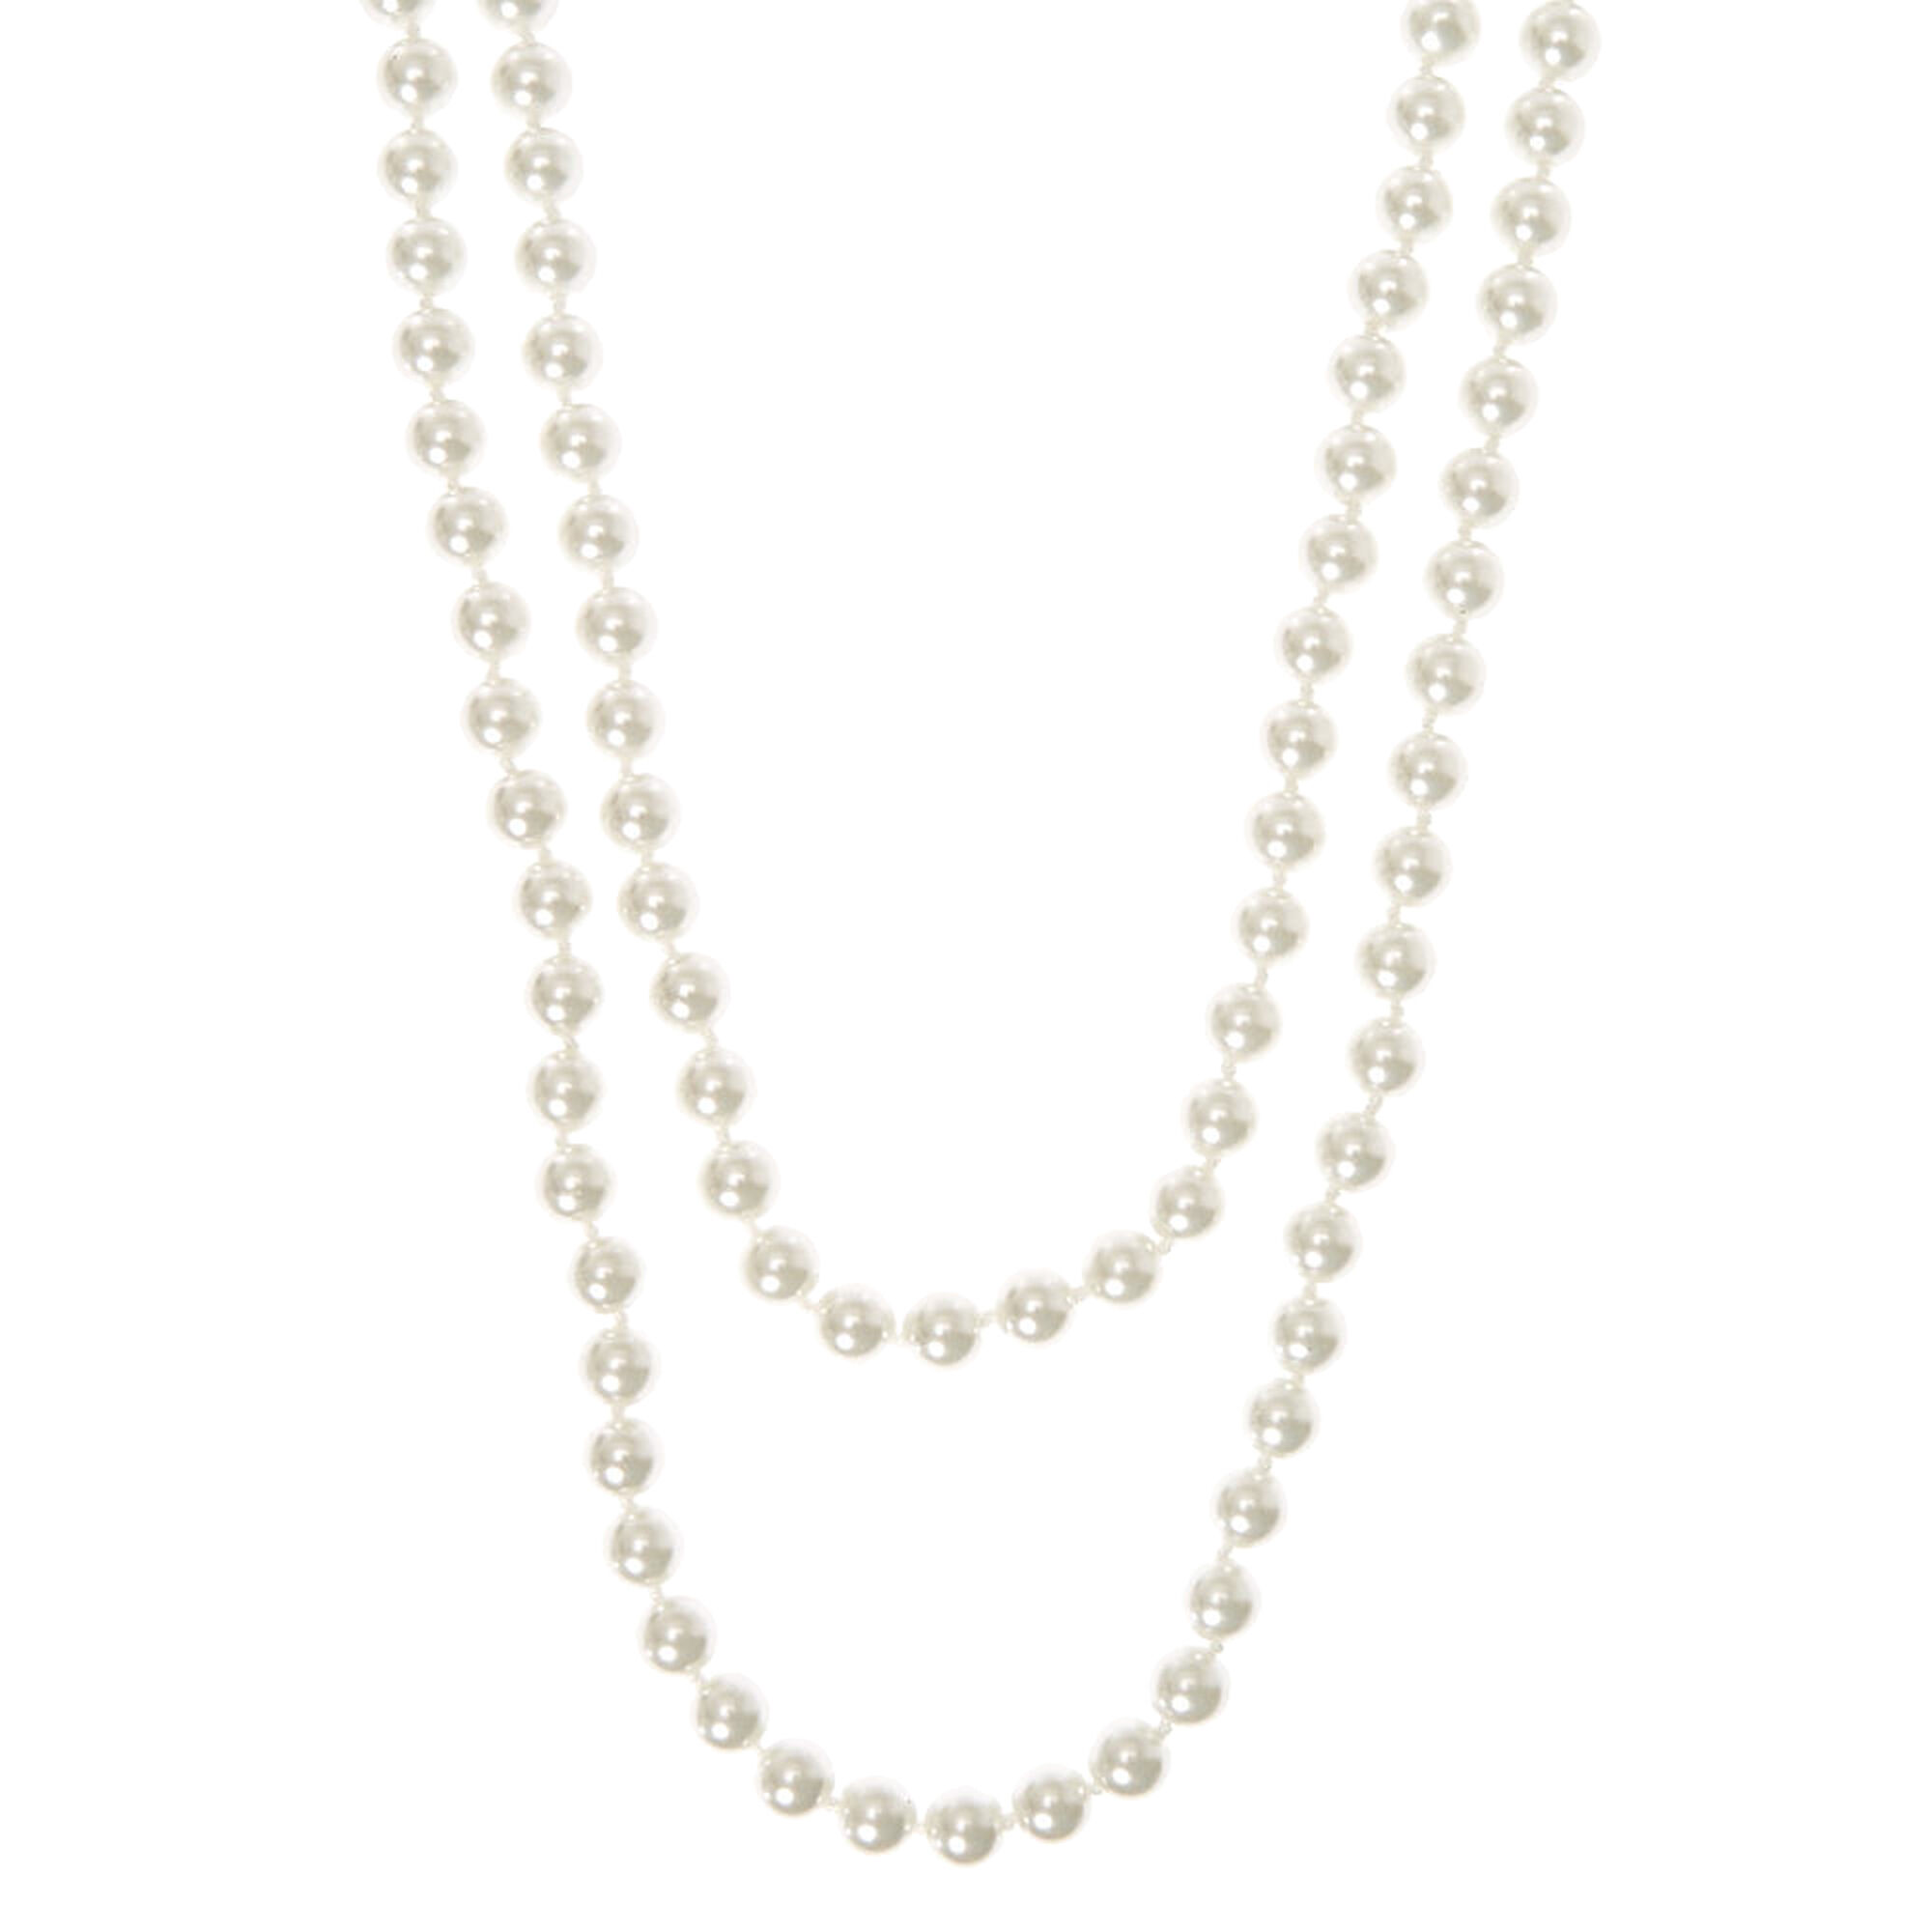 Claire's Long collier perlé - Couleur ivoire